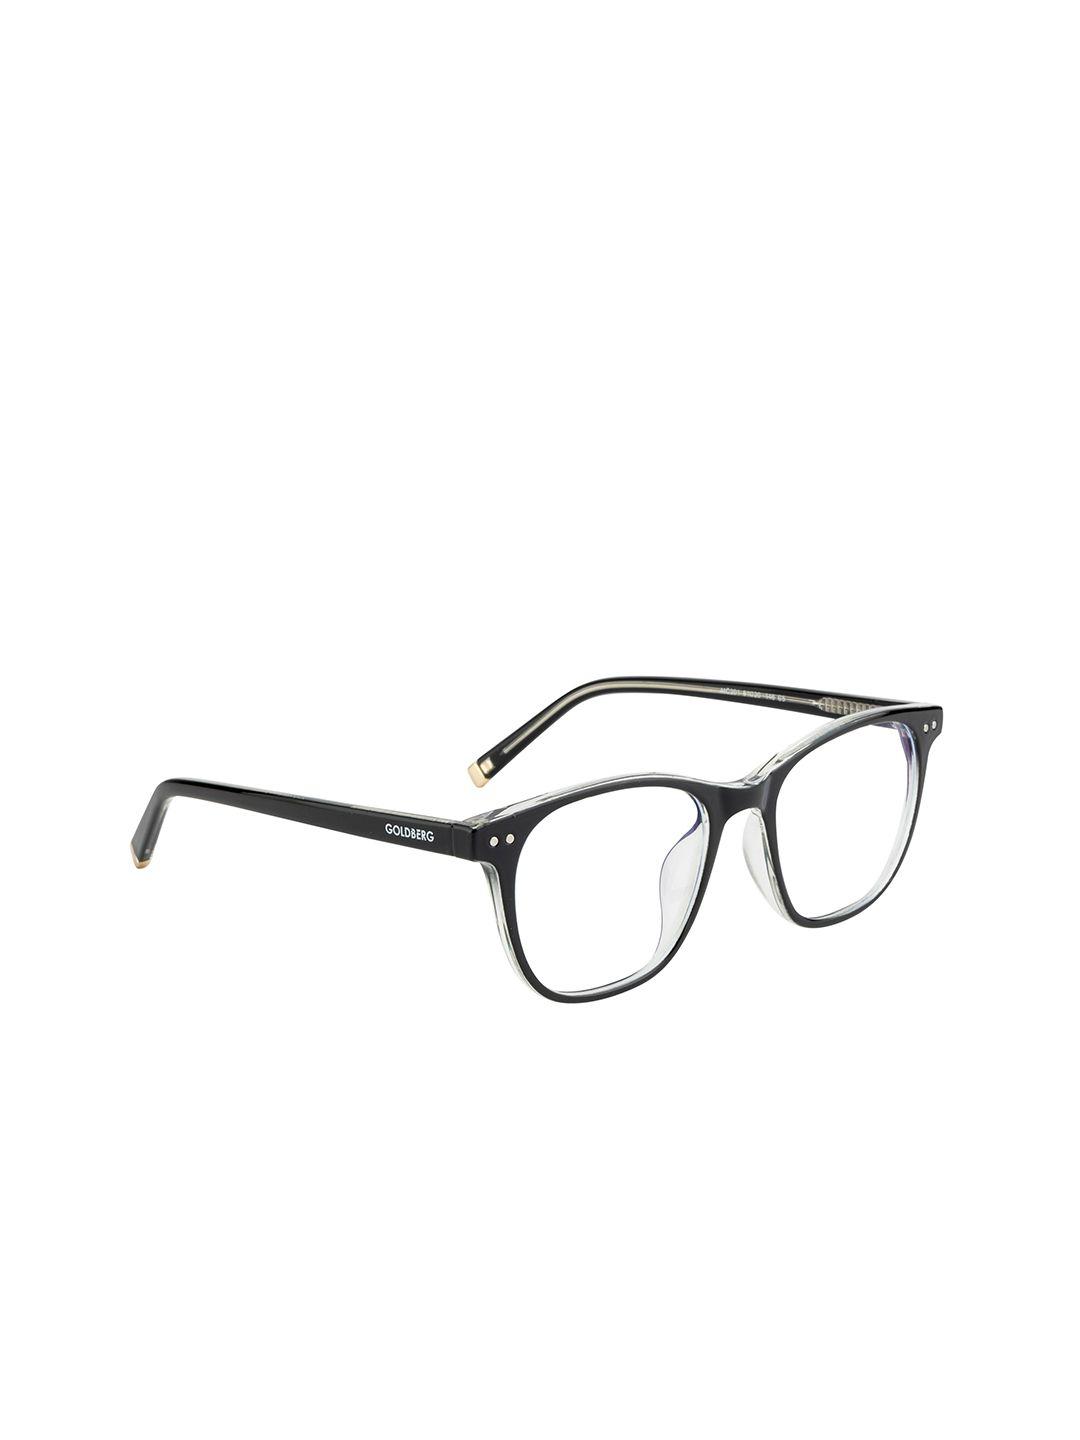 gold berg unisex black full rim square frames eyeglasses